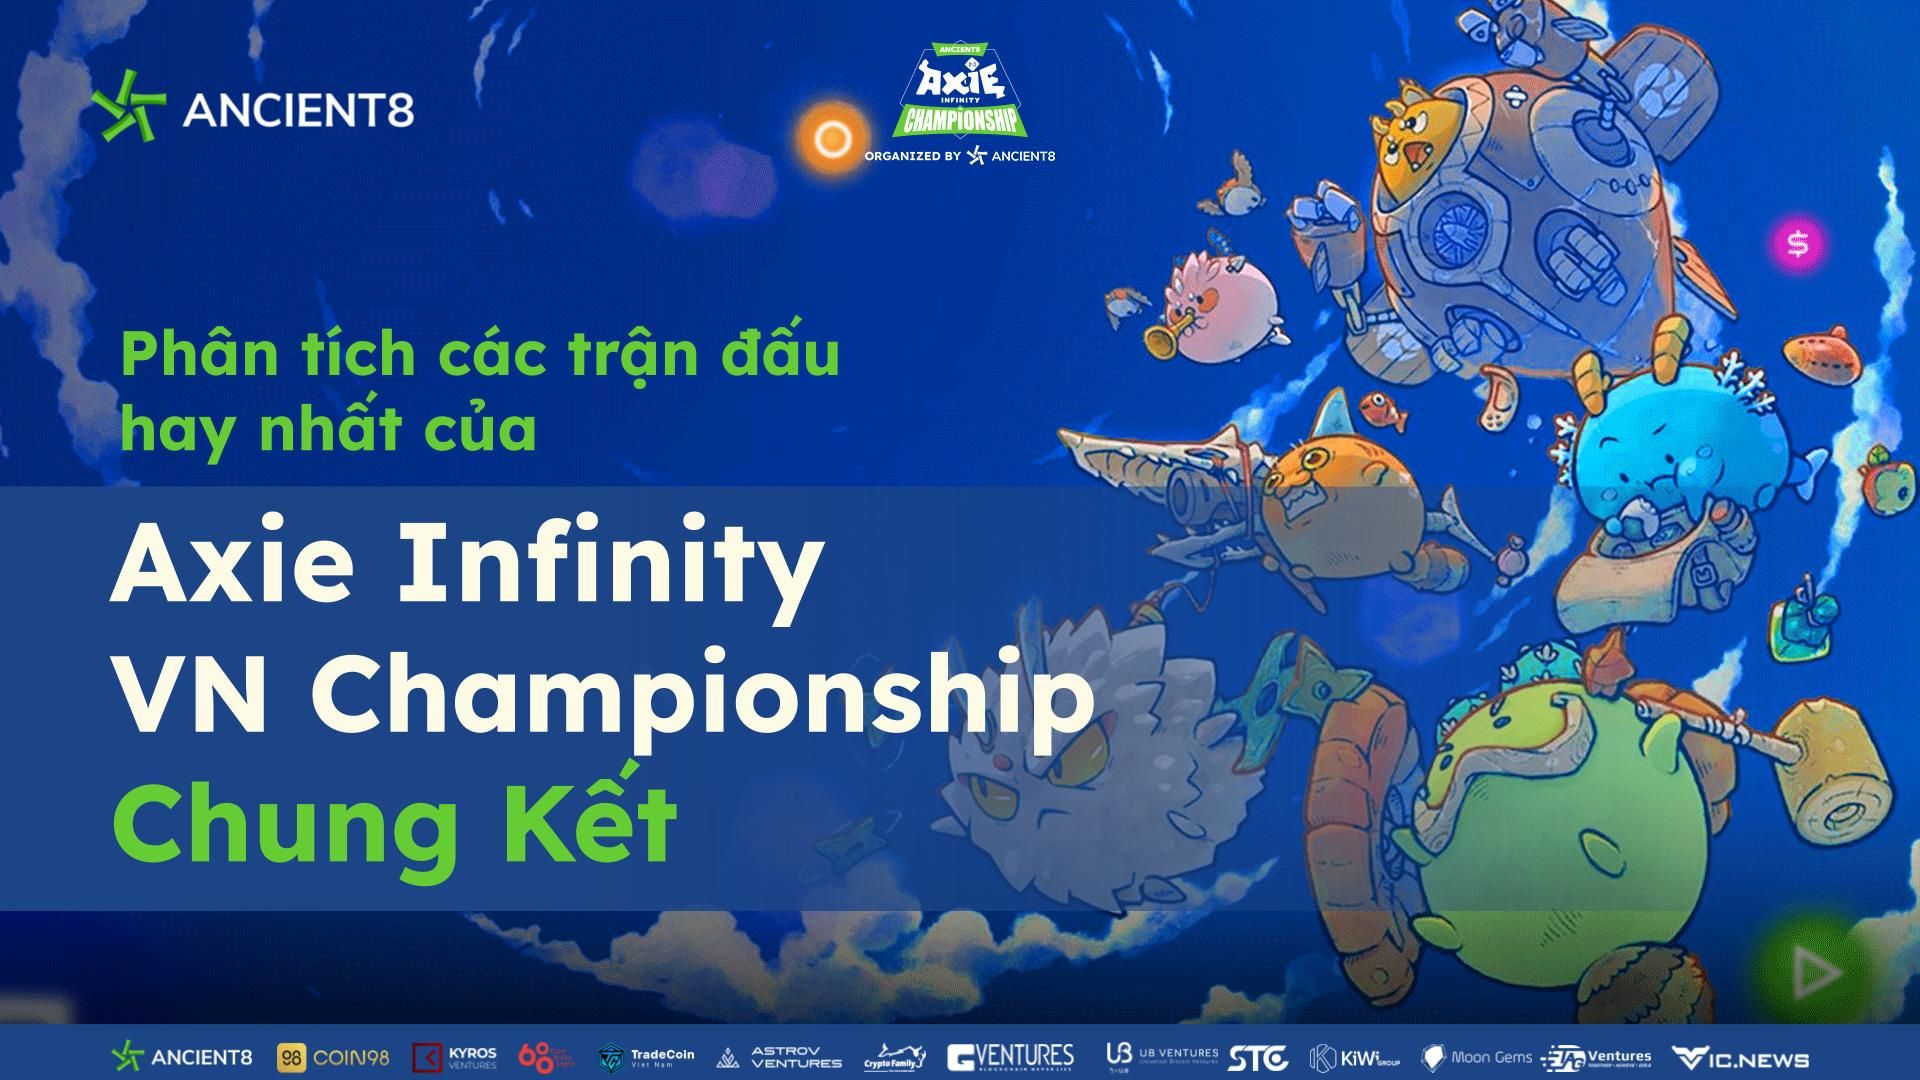 Phân tích các trận đấu hay nhất của Axie Infinity VN Championship - Chung kết